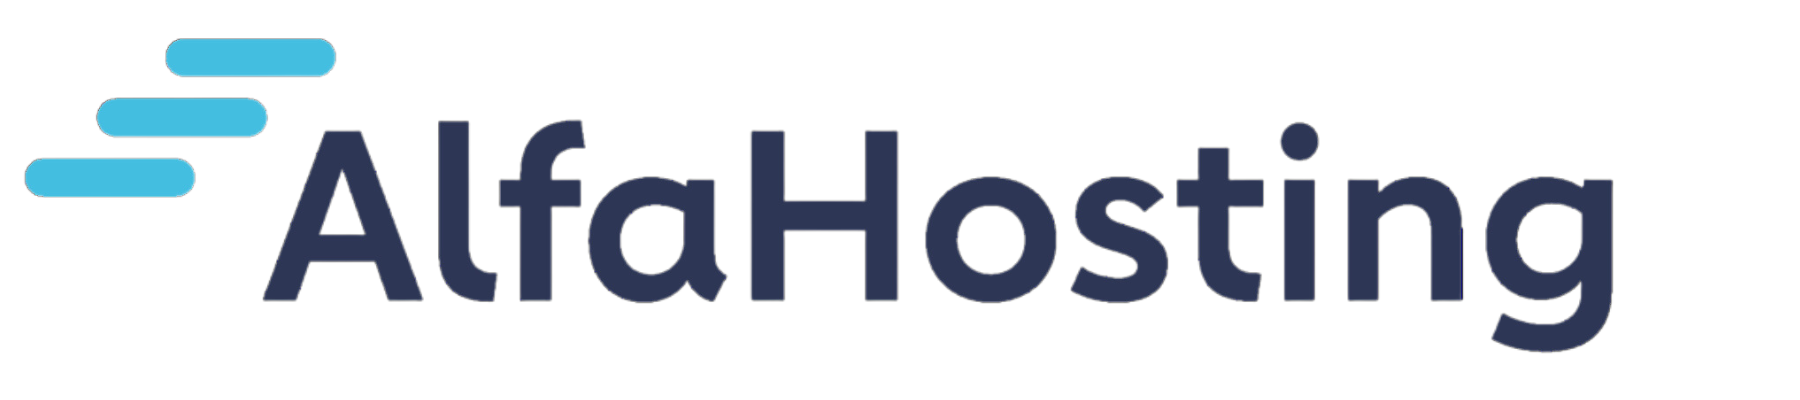 AlfaHosting logo